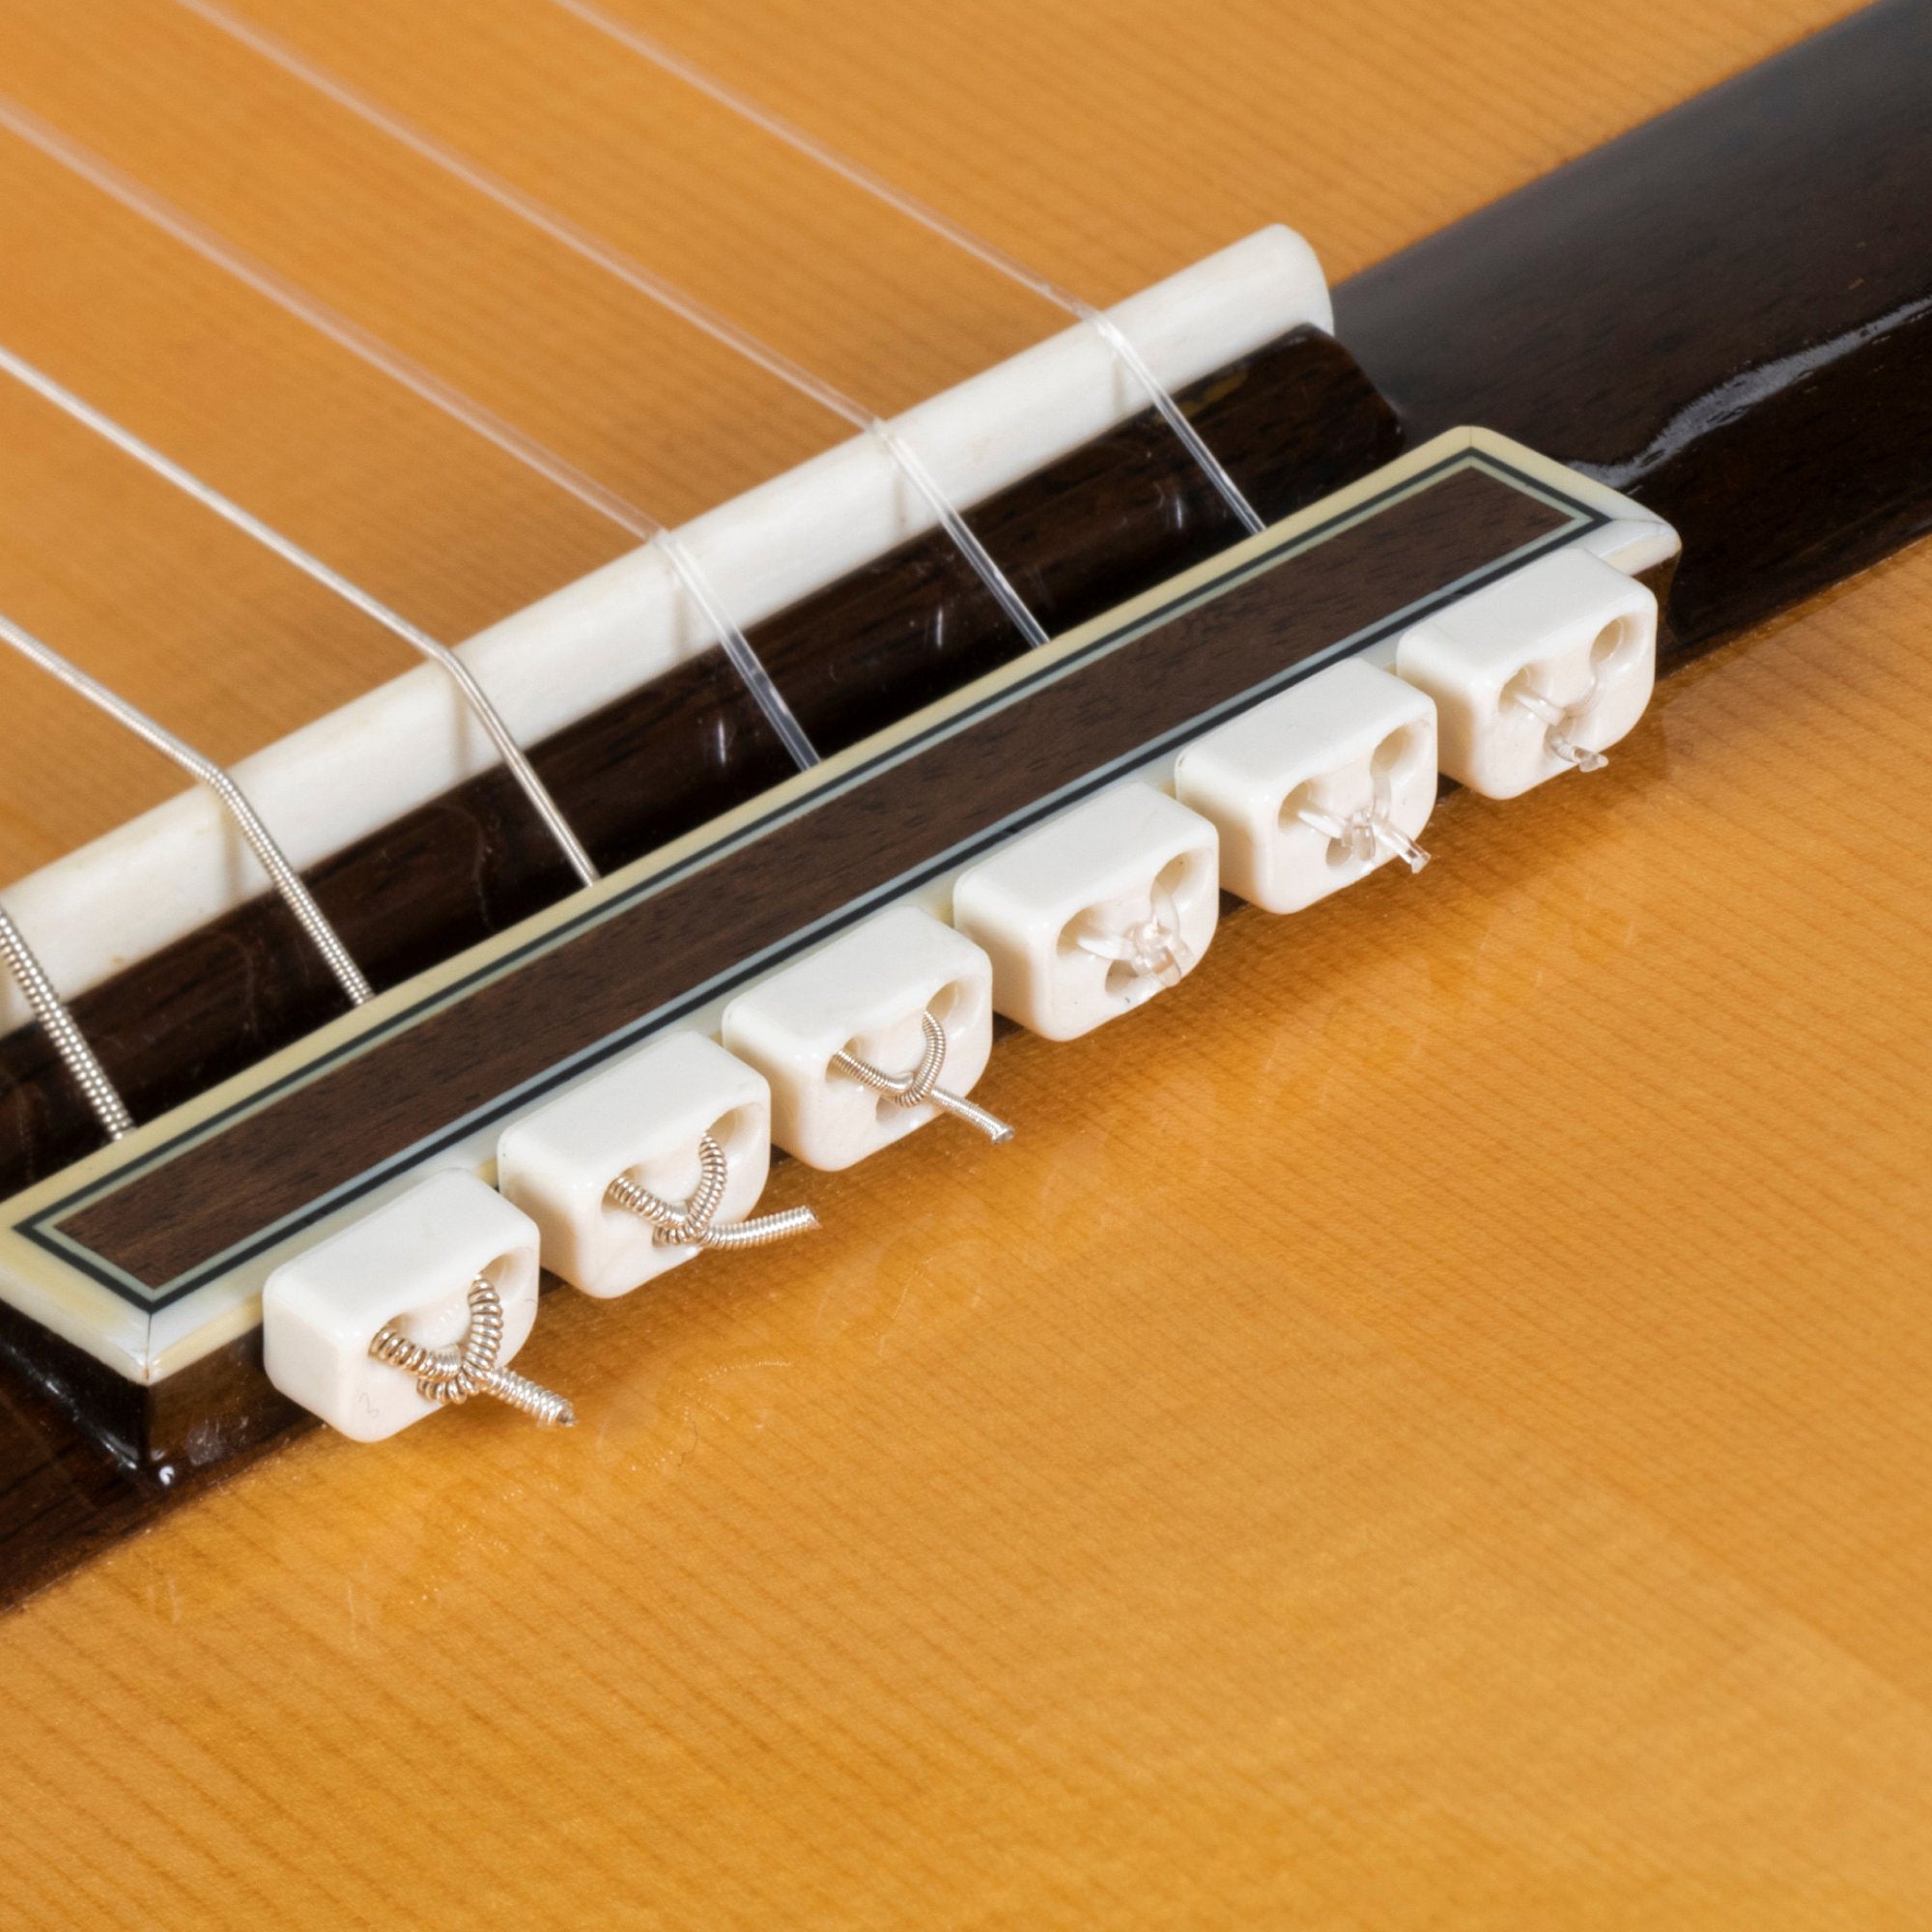 Alba Guitar Beads de plástico branco brilhante para violão clássico violão flamenco com cordas de nylon